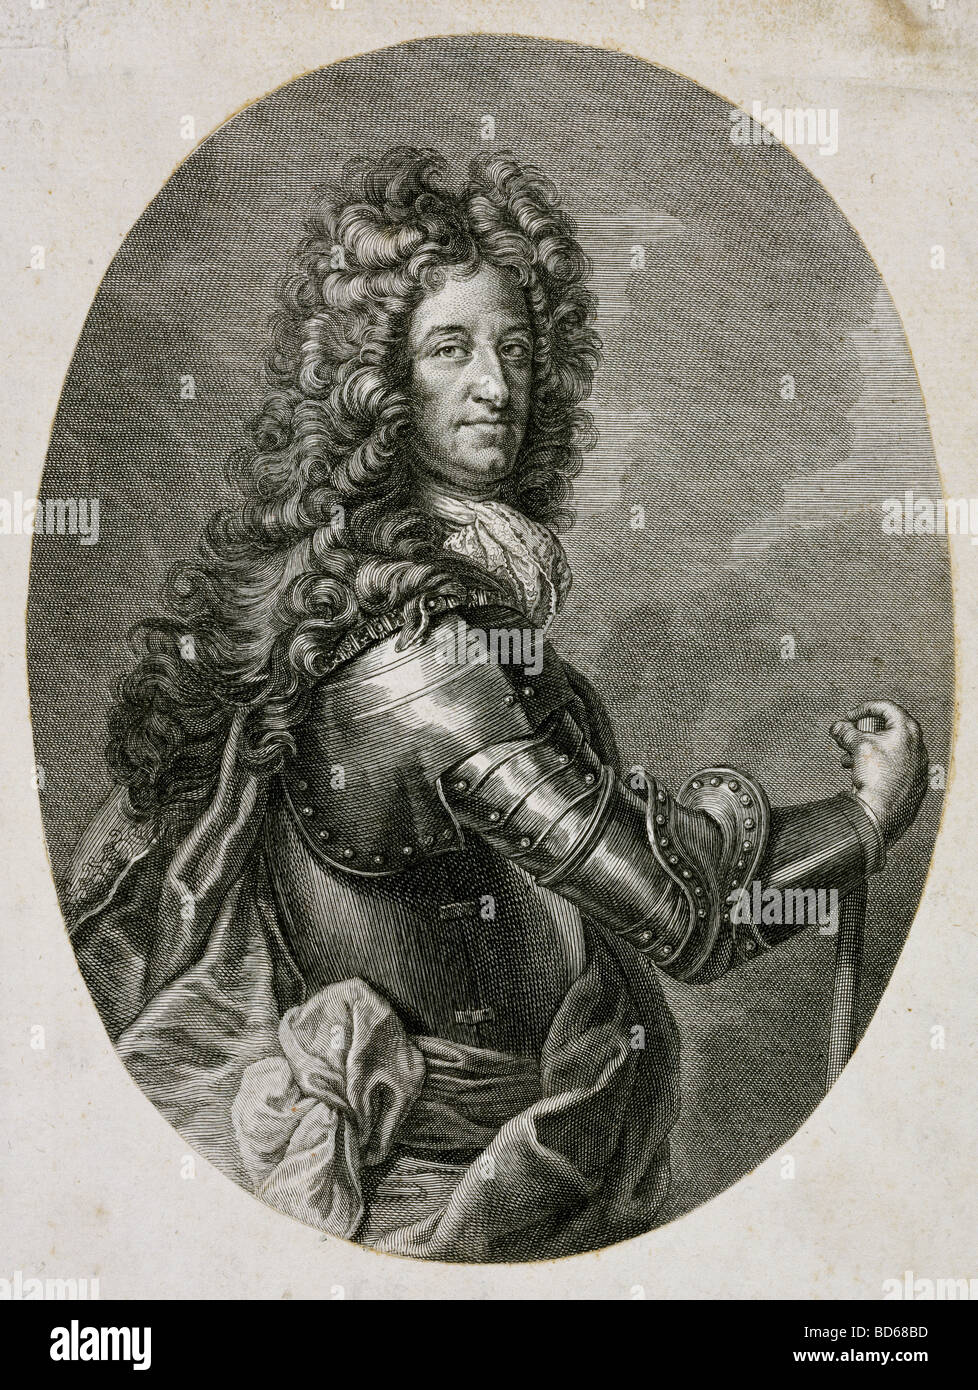 Maximiliano II Emanuel, 11.7.1662 - 26.2.1726, príncipe elector de Baviera 1679 - 1726, de longitud media, grabado en cobre, del siglo XVIII, el Copyright del artista no ha de ser borrado Foto de stock